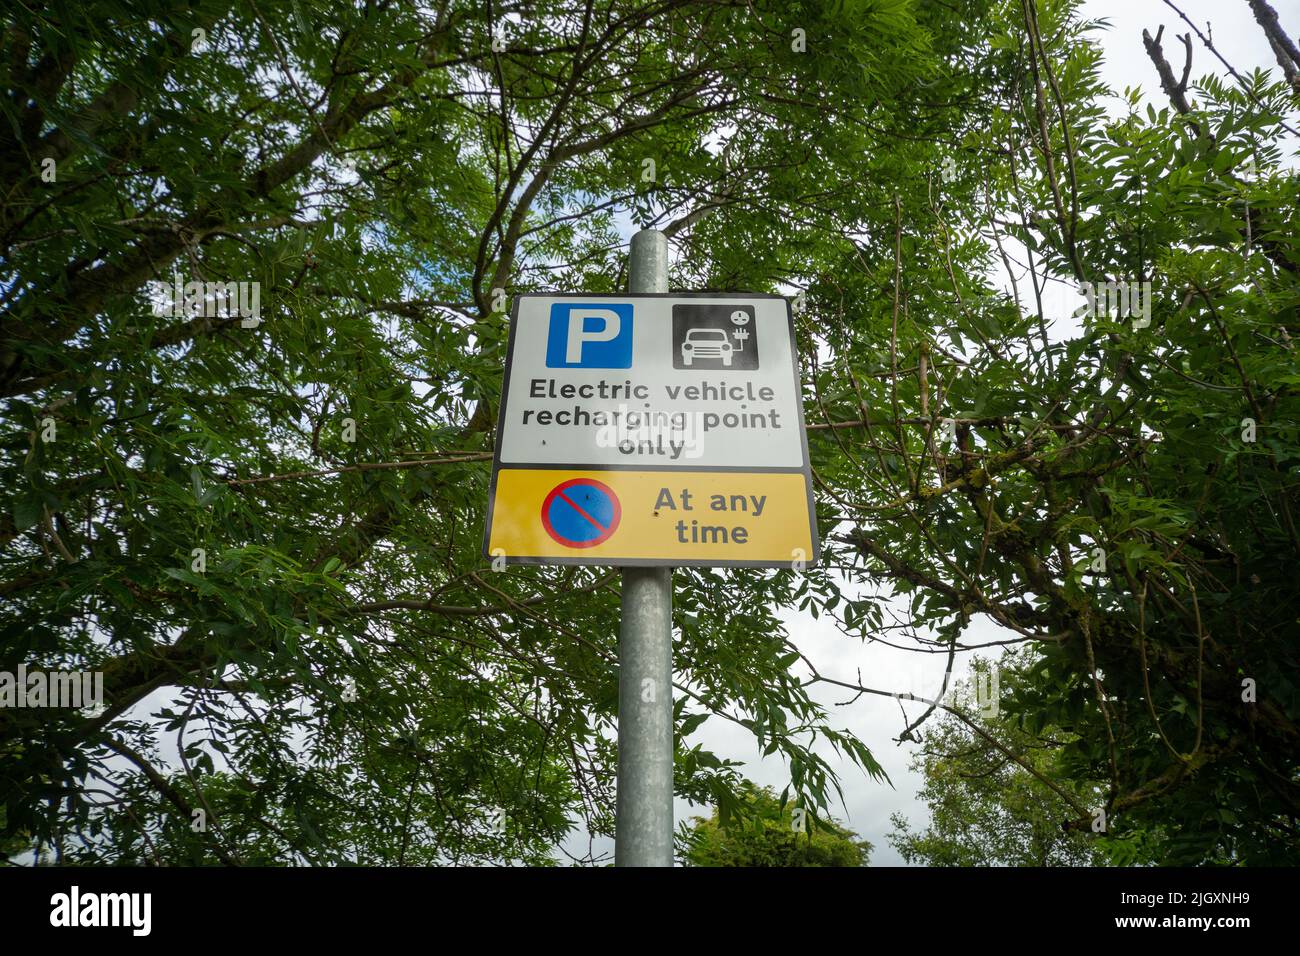 Solo punto de recarga de vehículos eléctricos: Señal que prohíbe el estacionamiento a menos que se cargue un vehículo con EV, Escocia, Reino Unido Foto de stock